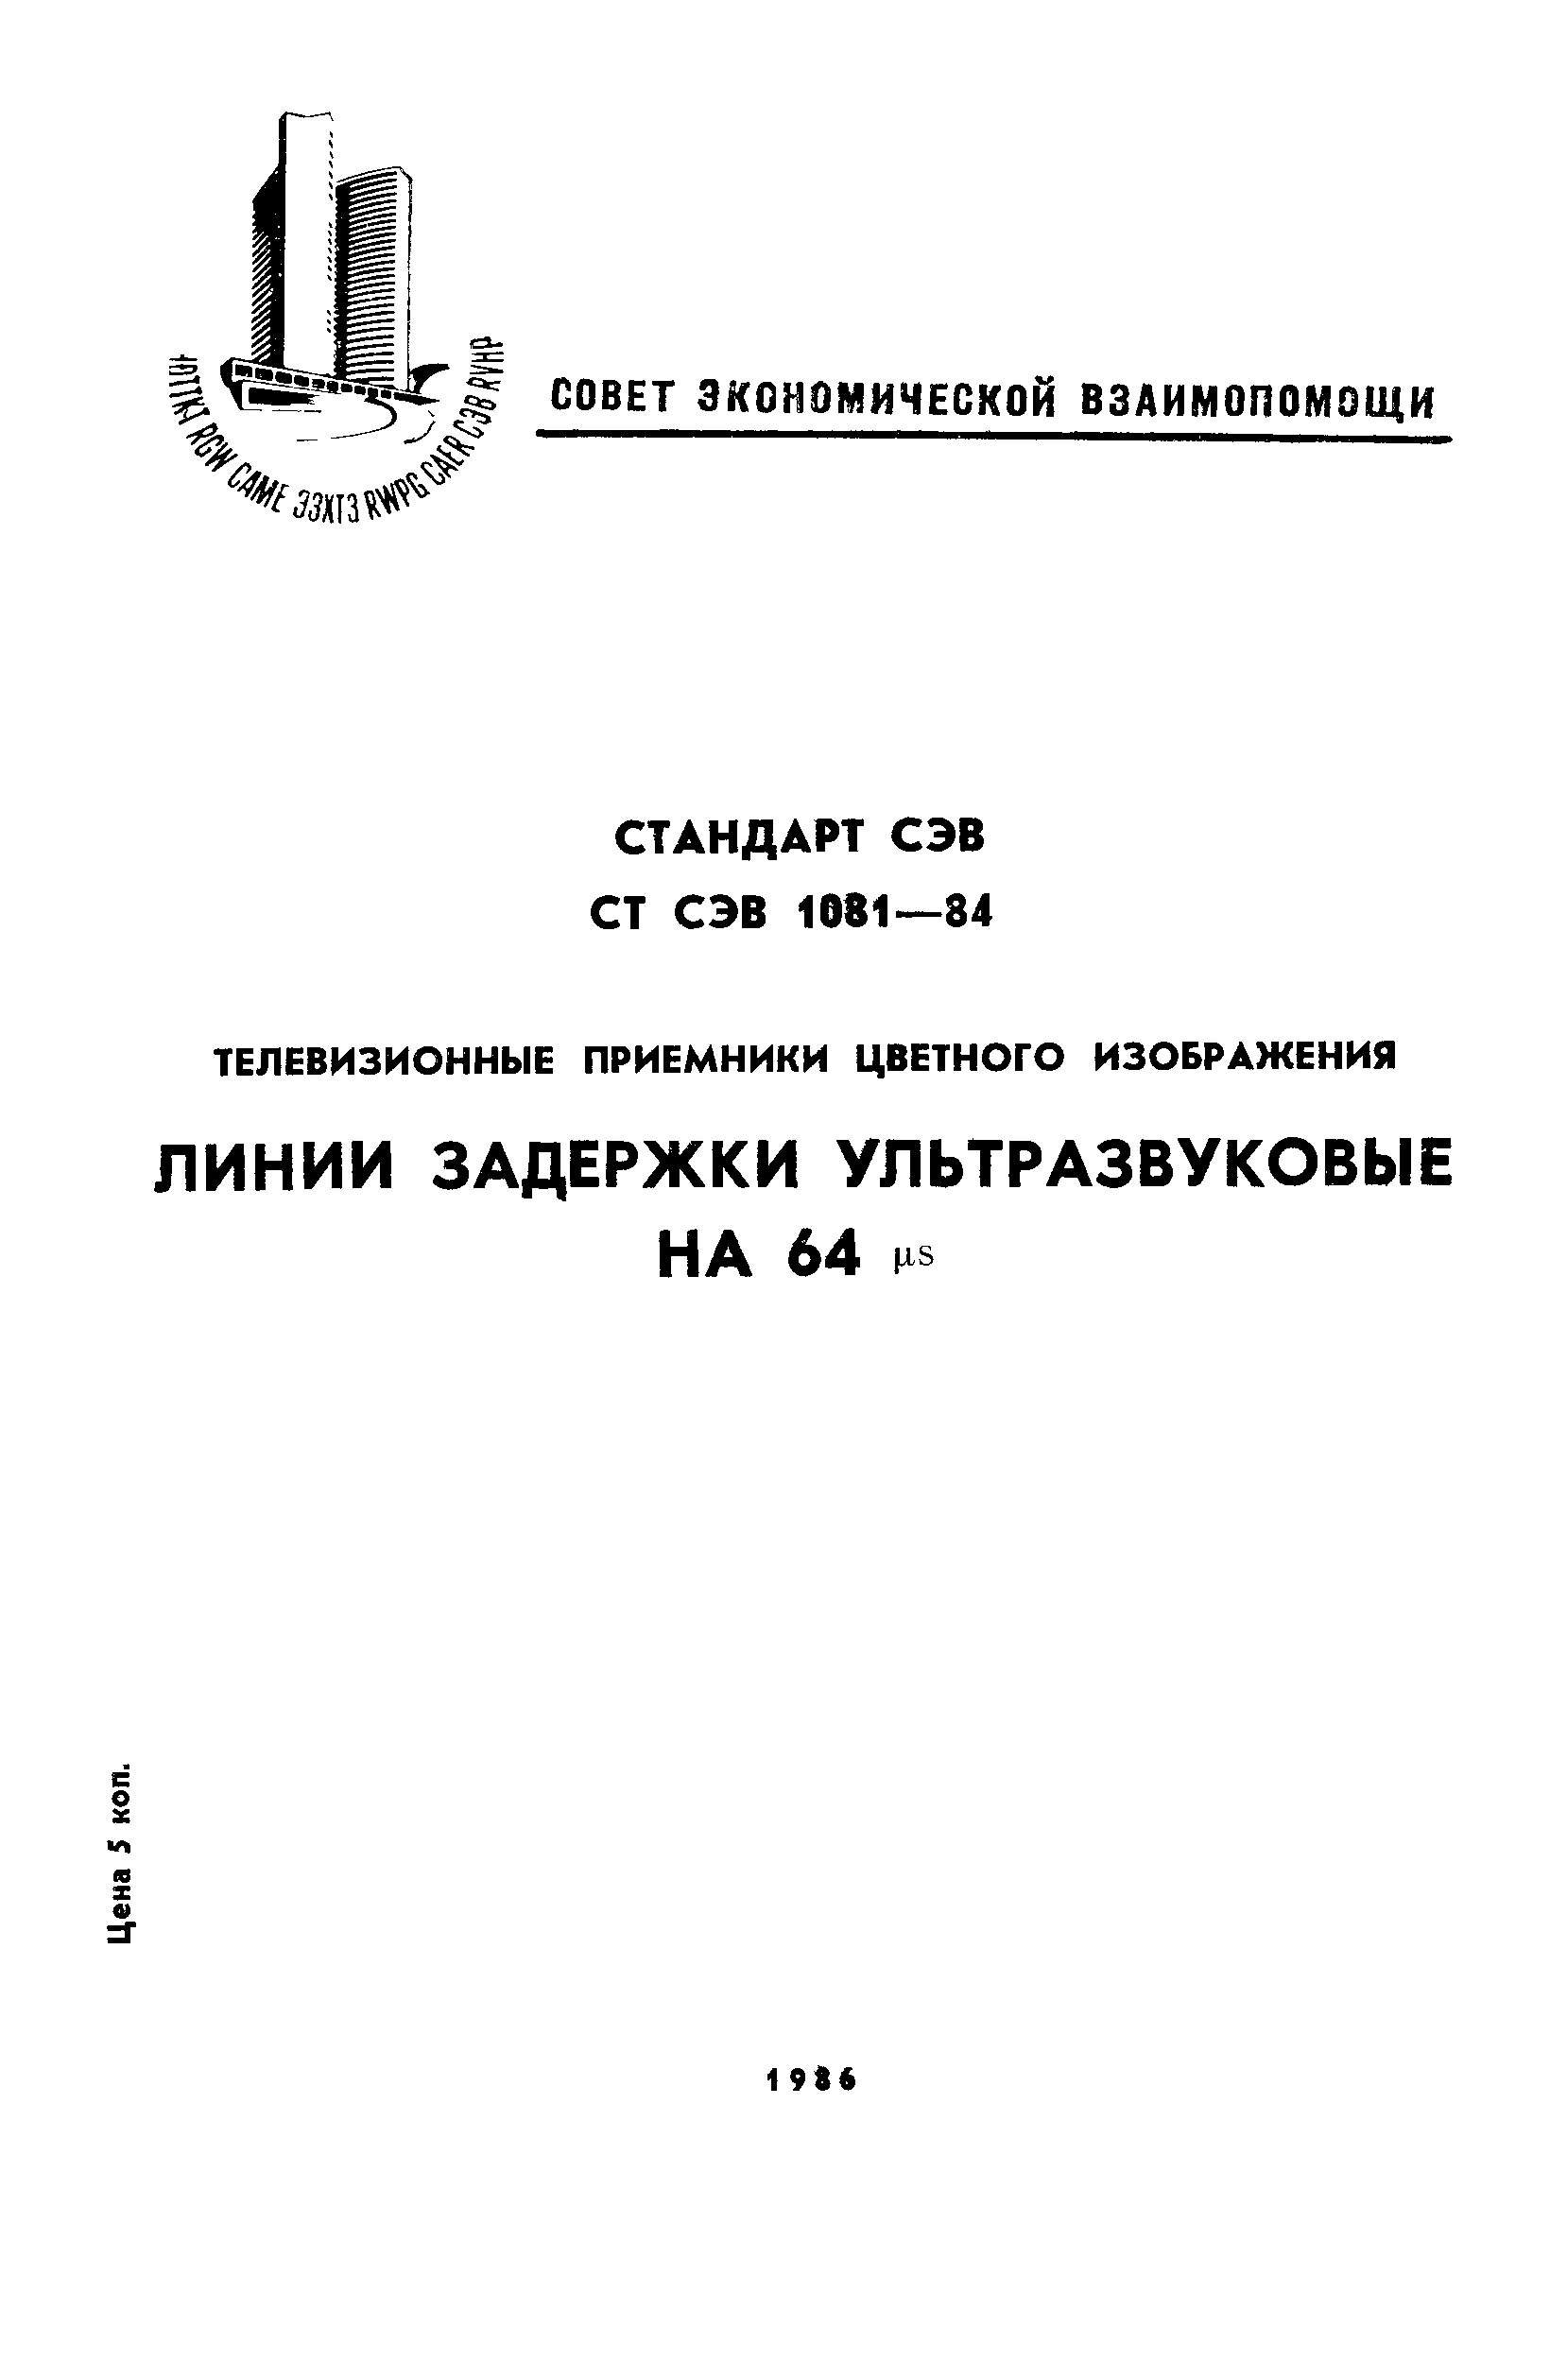 СТ СЭВ 1081-84